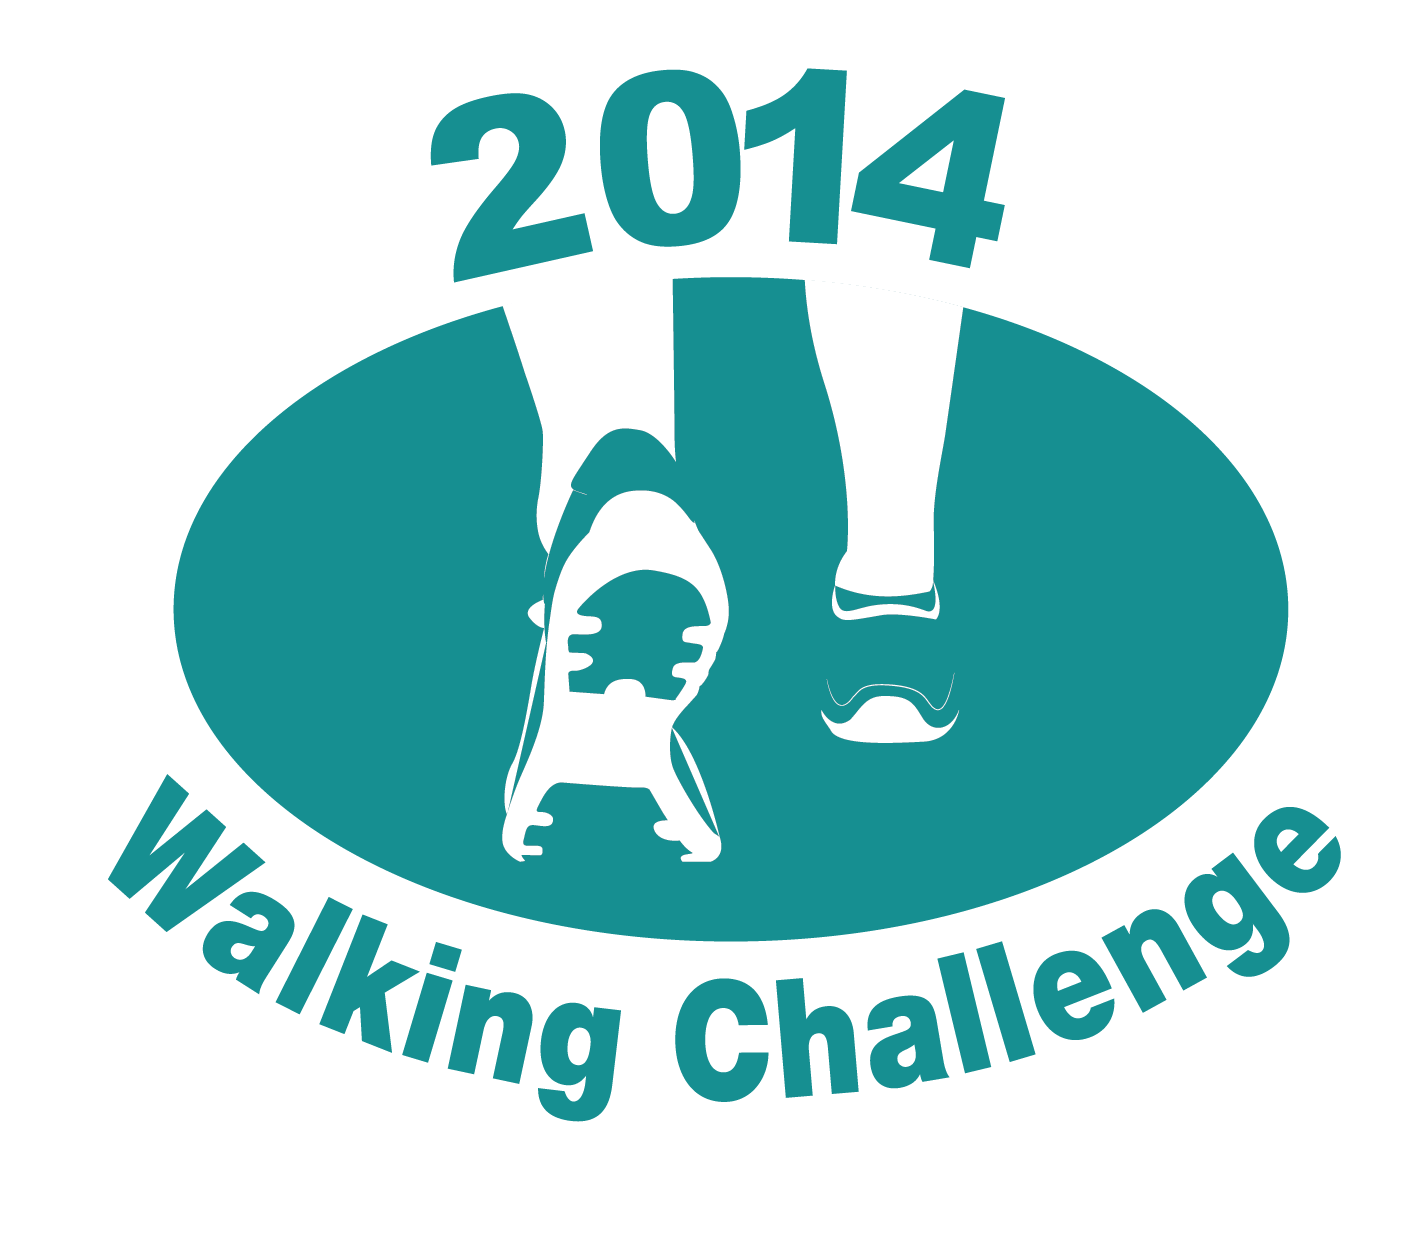 Walking Logo - Walking challenge - Civil Service Local